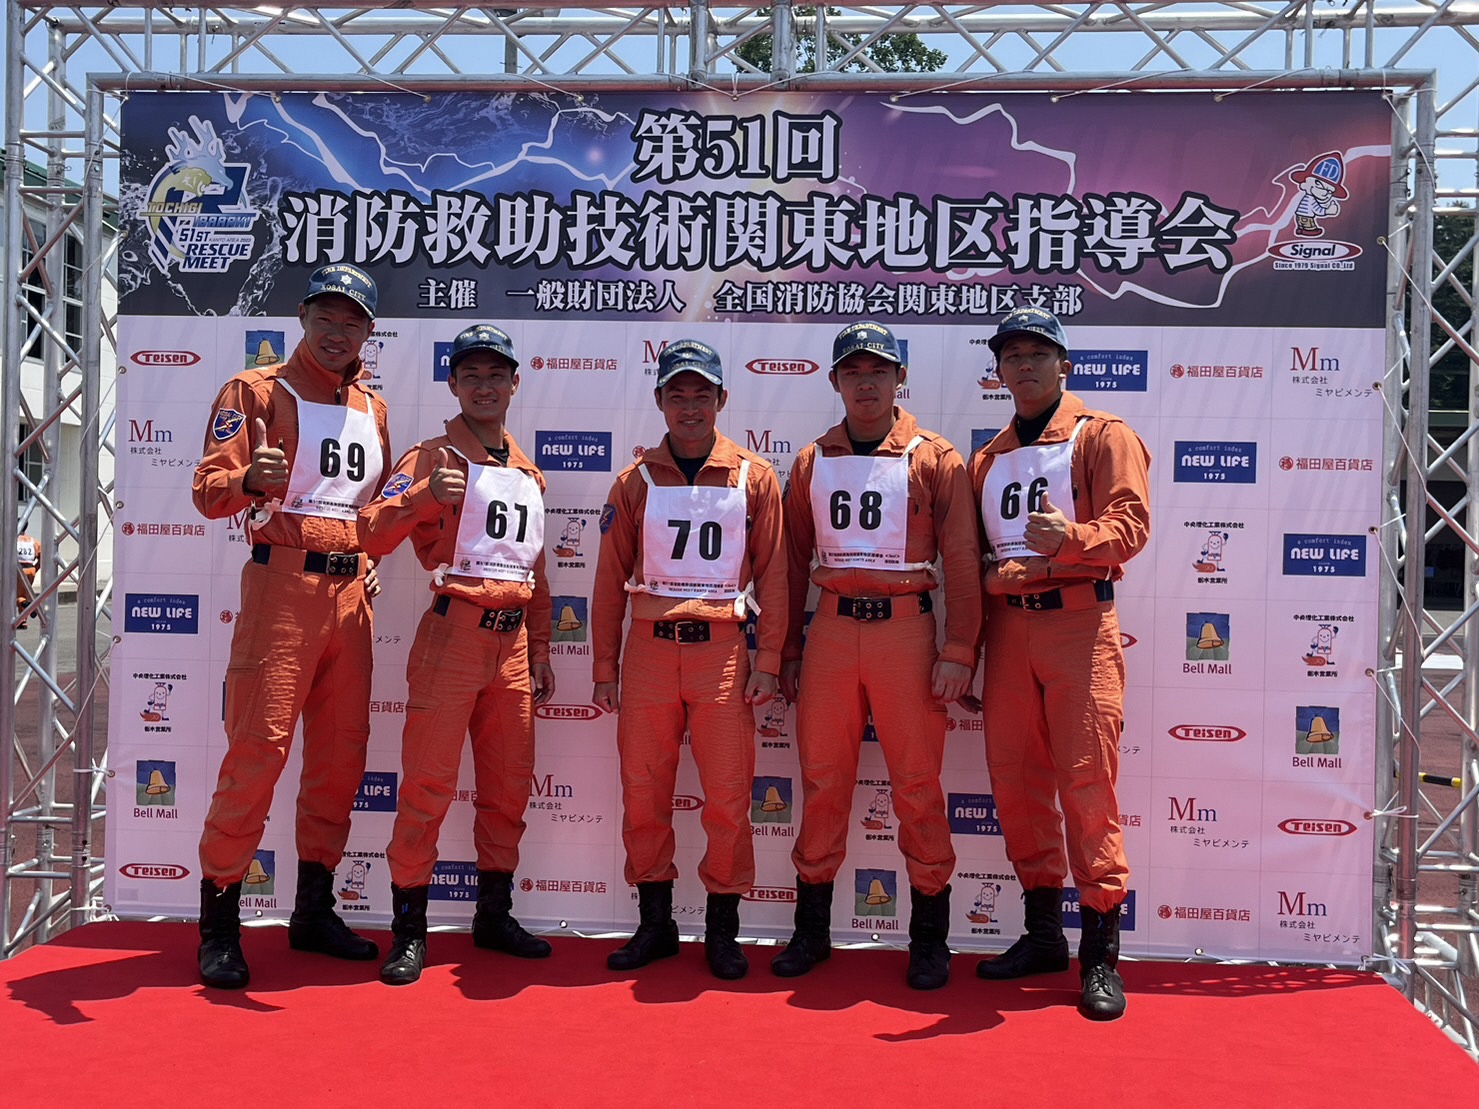 第51回消防救助技術関東地区指導会 参加選手の5名